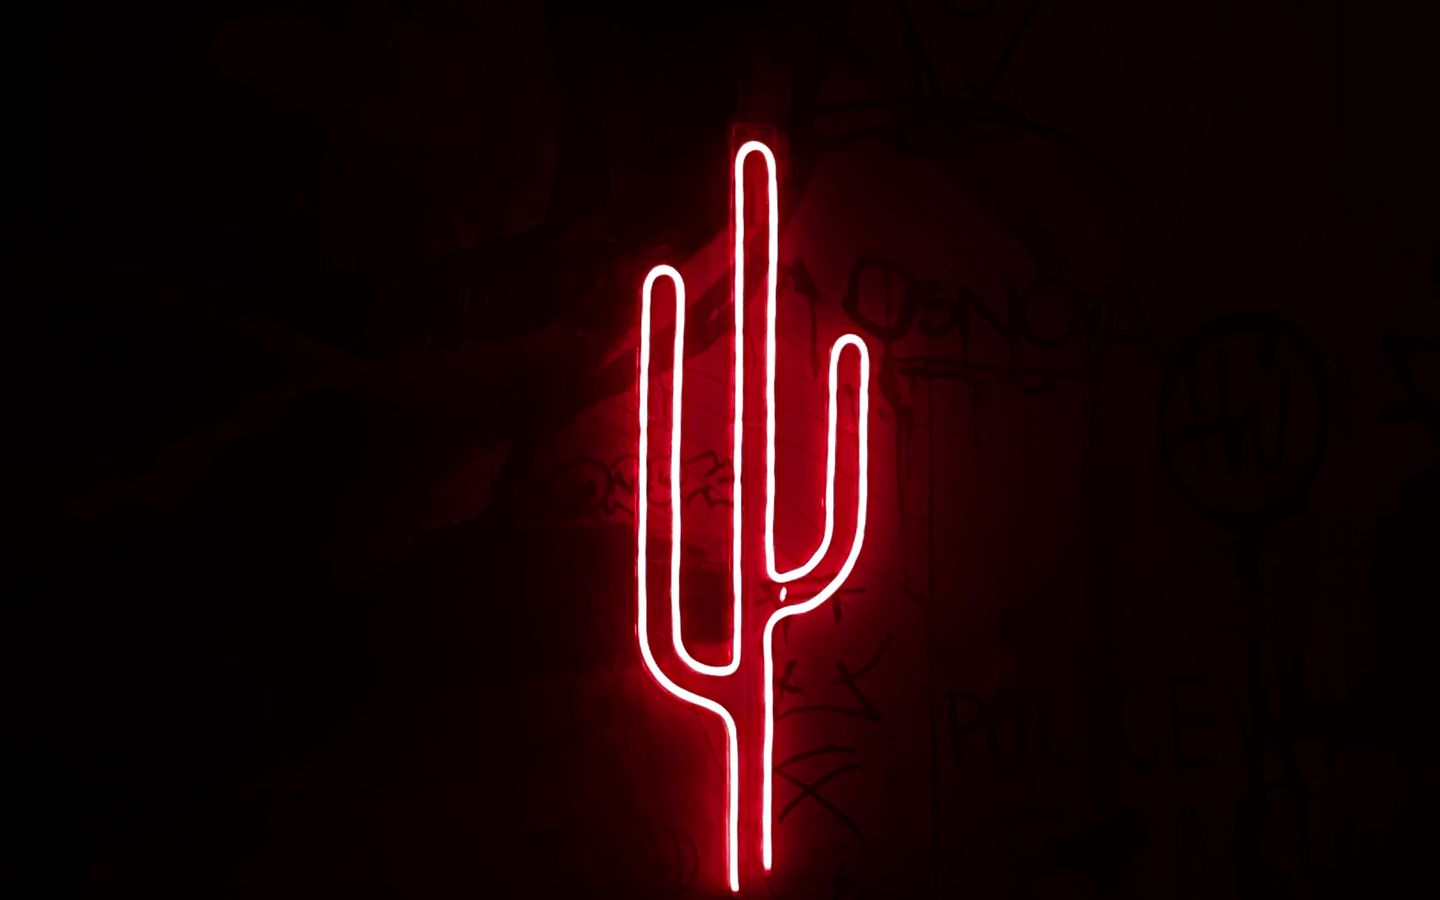 Hình nền cactus neon: Tạo sự sống động cho màn hình của bạn với hình ảnh cactus neon. Khảm phá bộ sưu tập của chúng tôi để tìm kiếm những bức ảnh với các hình dạng cactus độc đáo được tô điểm bởi sự rực rỡ của ánh sáng neon. Những bức hình nền này sẽ làm cho màn hình của bạn trở nên độc đáo và phá cách.